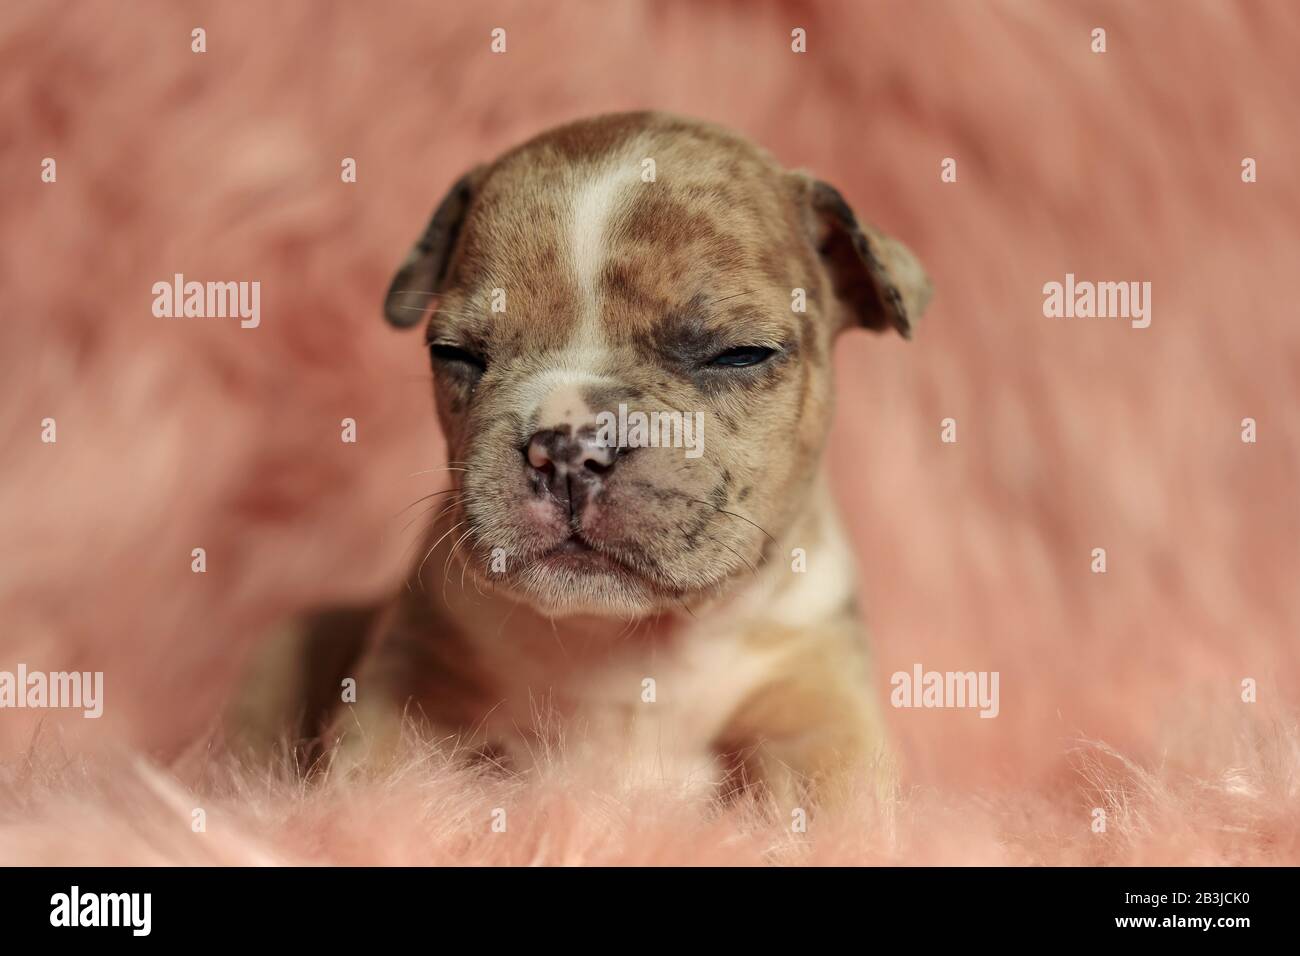 Vorderansicht eines Hundes, der in einer flauschigen Umgebung steht und schläfrig ist Stockfoto